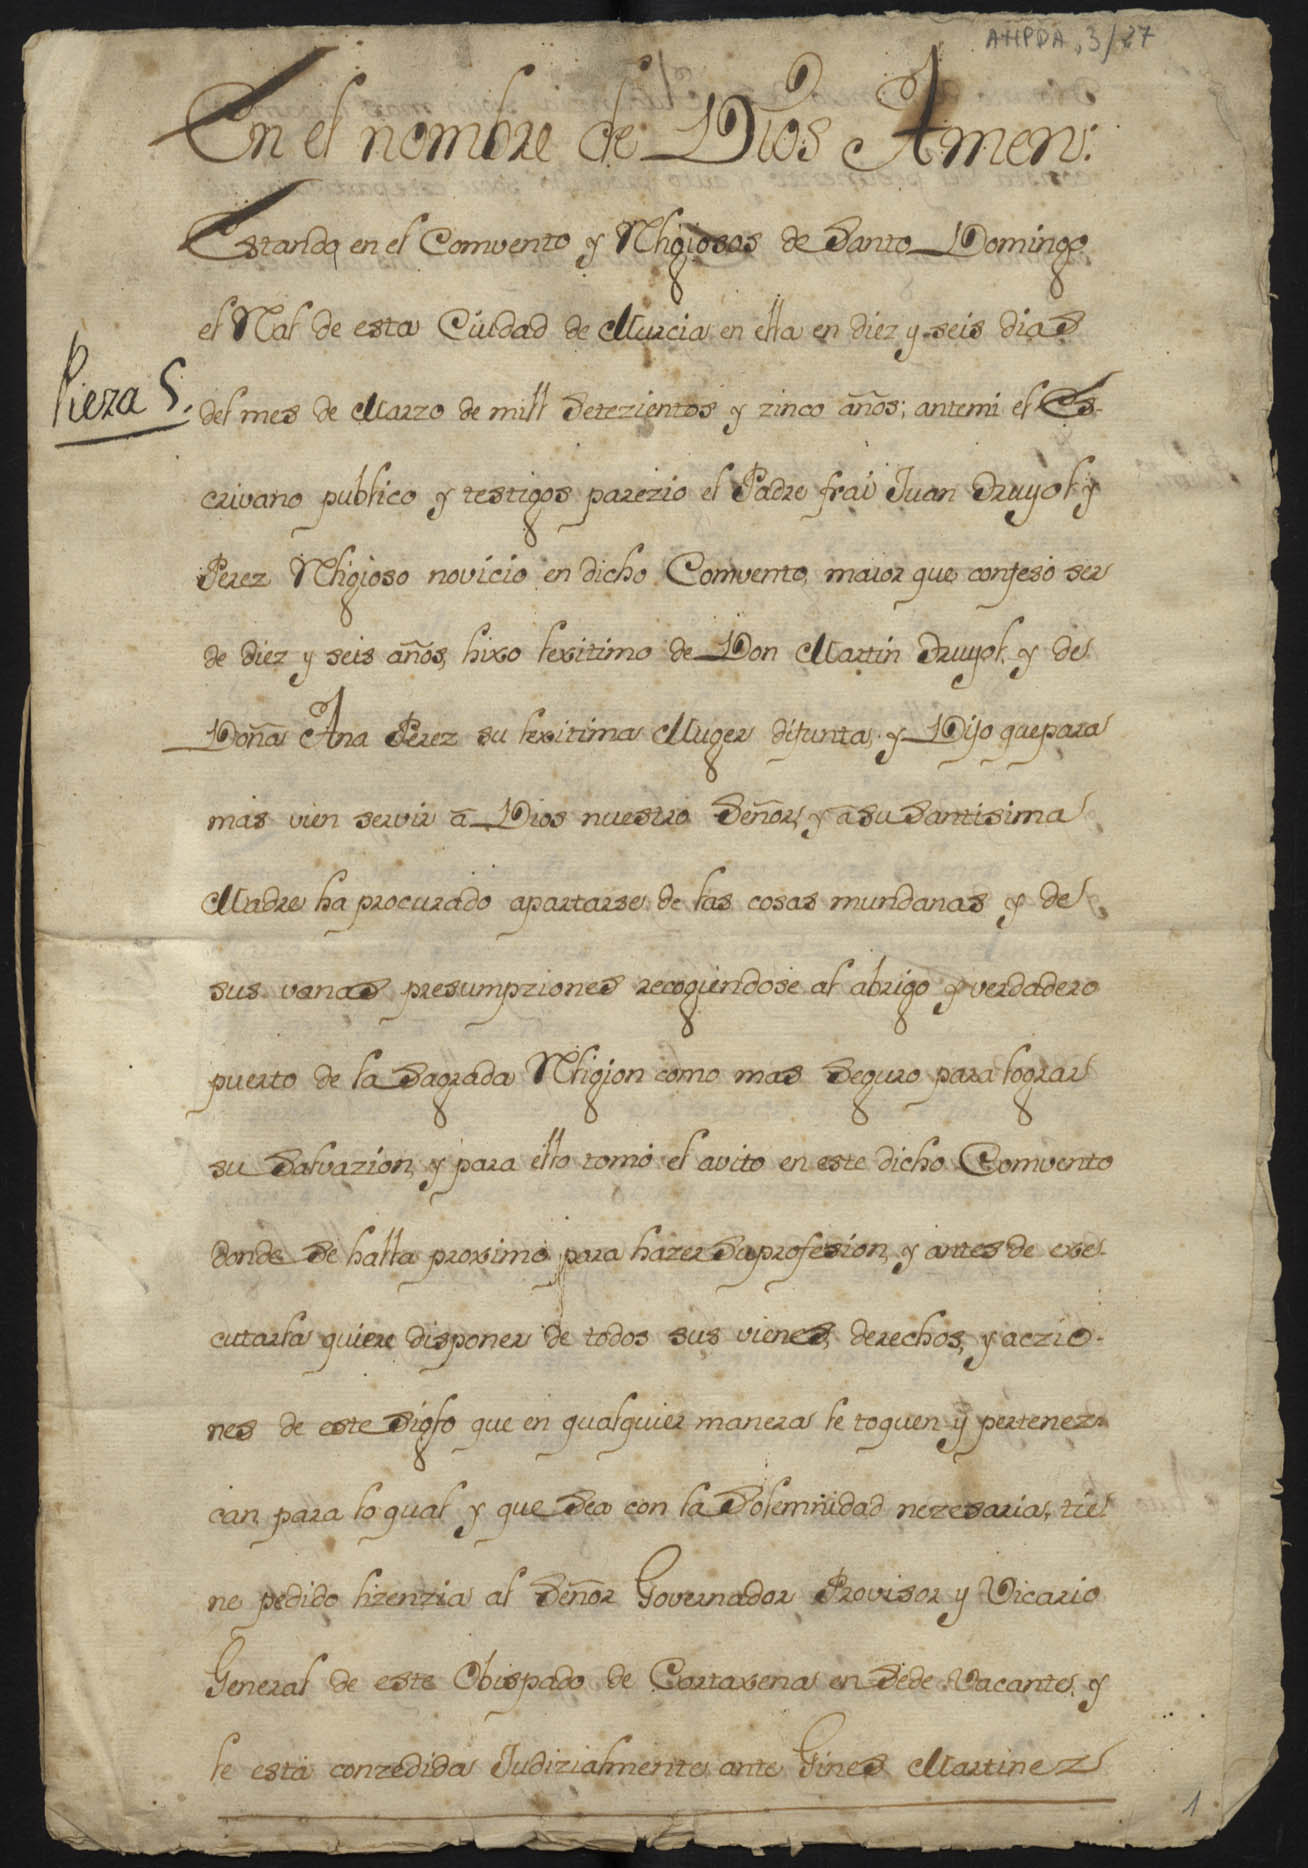 Traslado simple de la renuncia de legítimas de Juan Truyol Pérez, novicio del Convento de Santo Domingo el Real de Murcia, realizada el 16 de marzo de 1705.